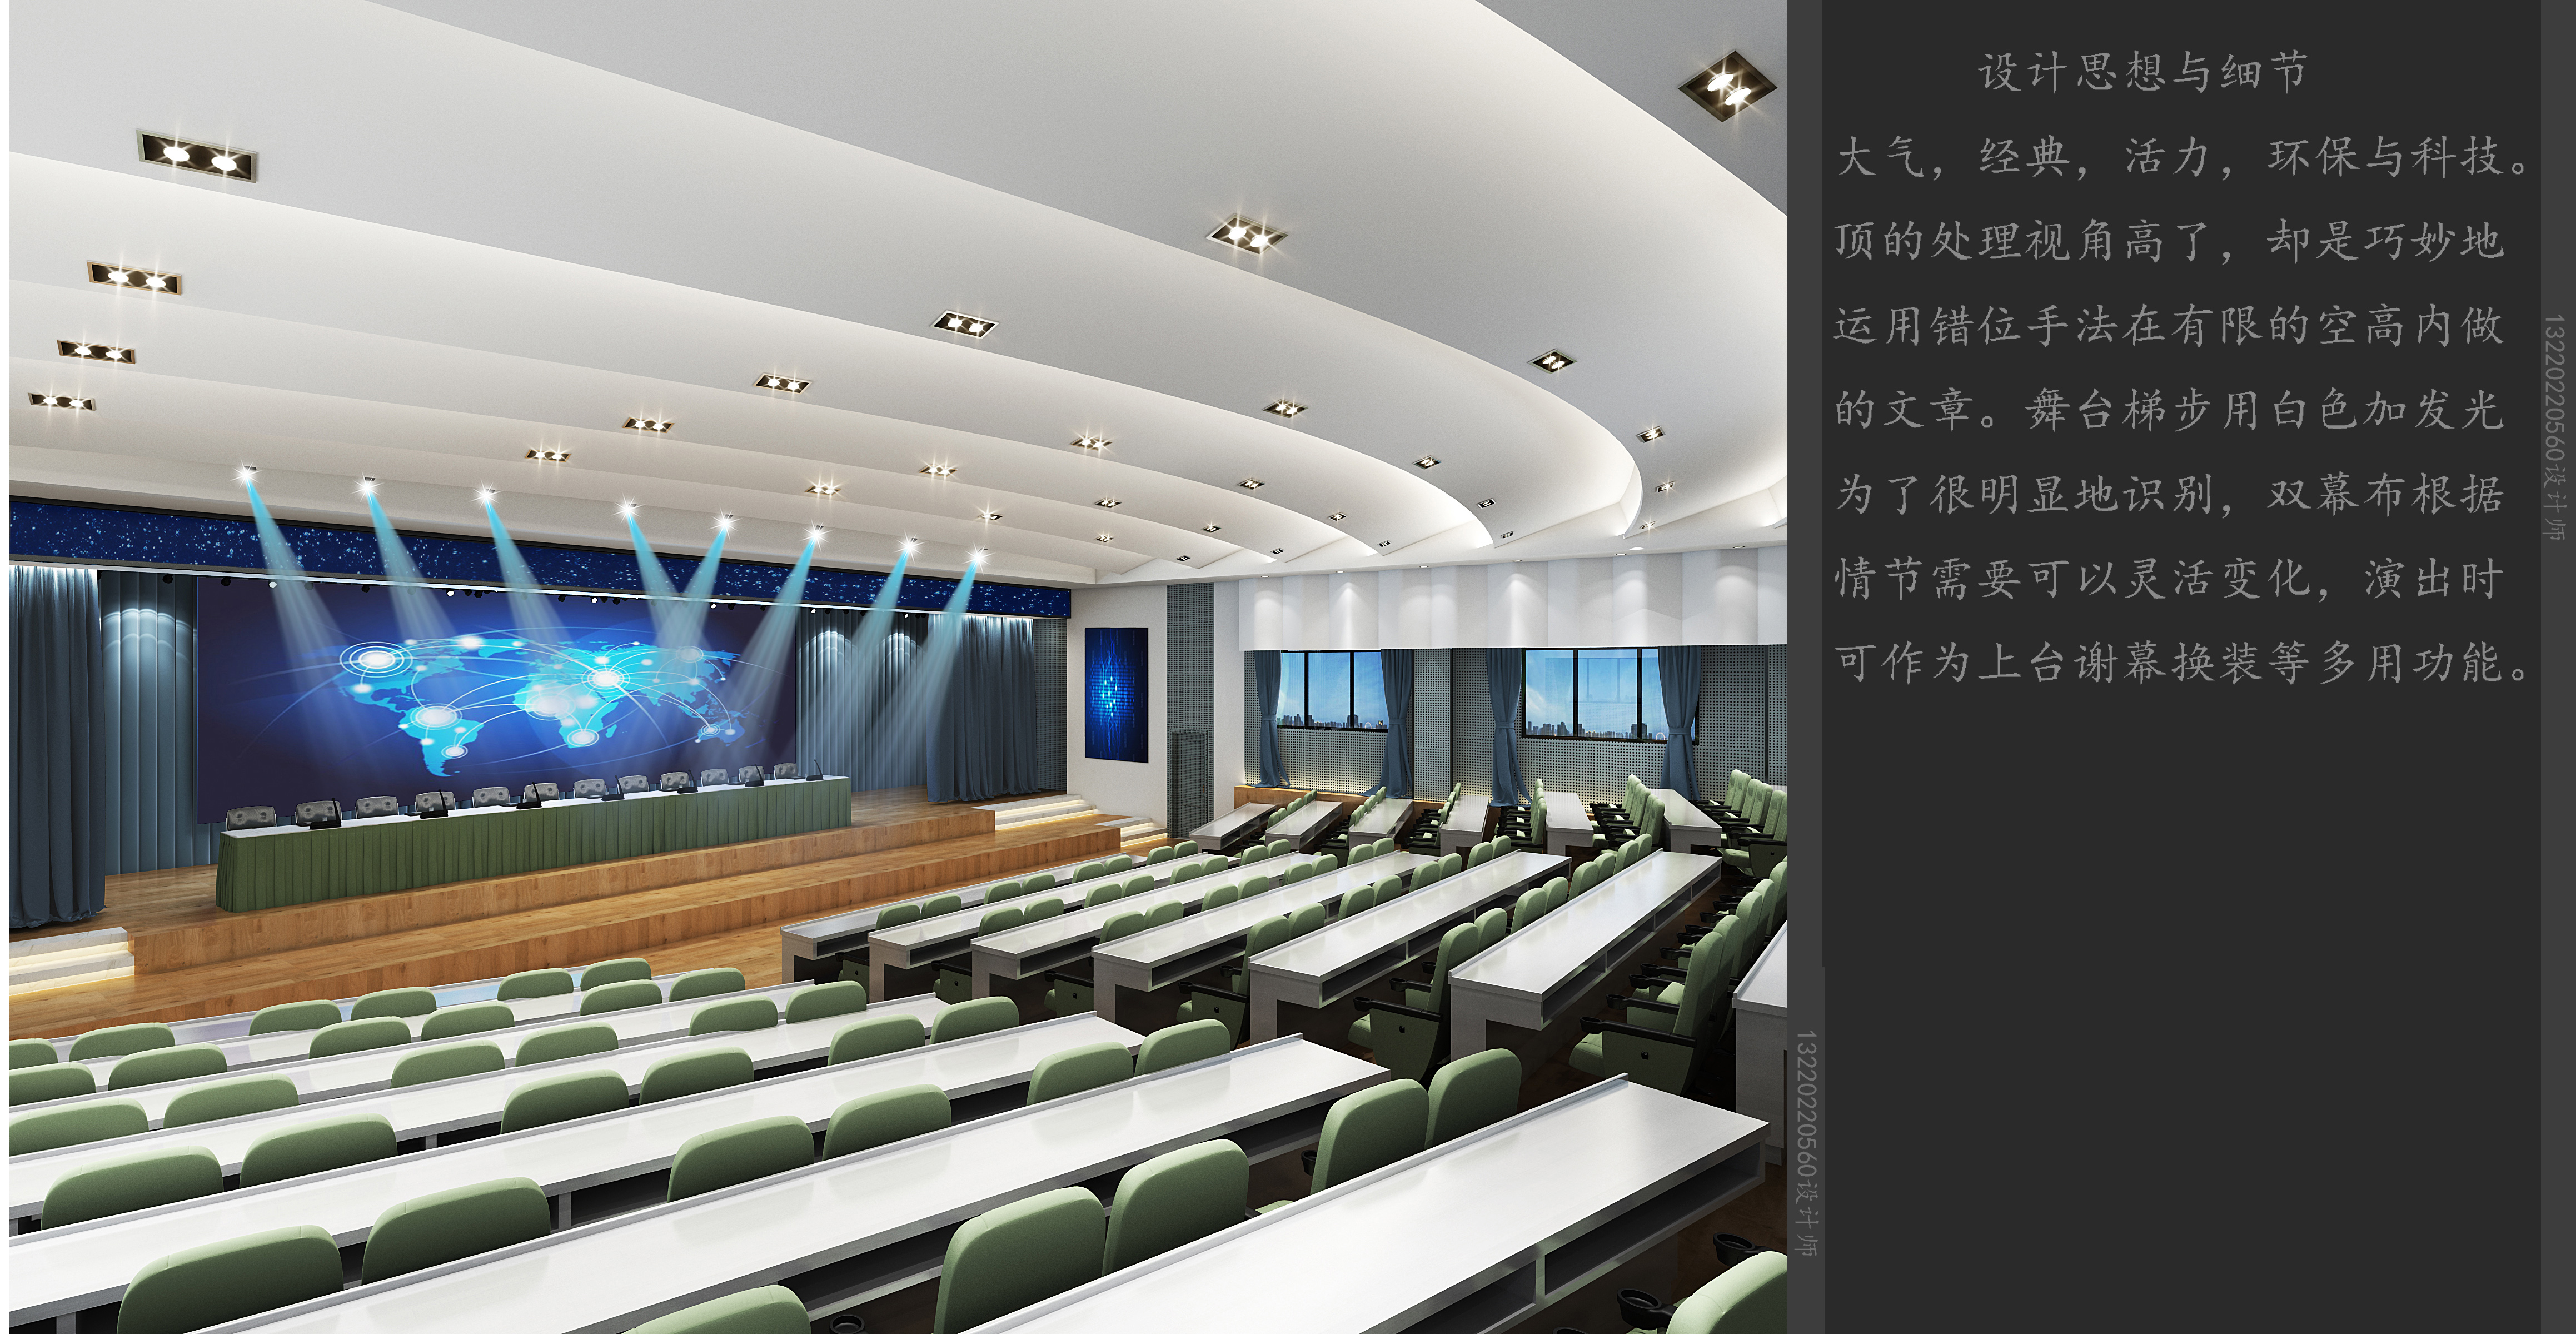 重庆永川报告厅装修设计